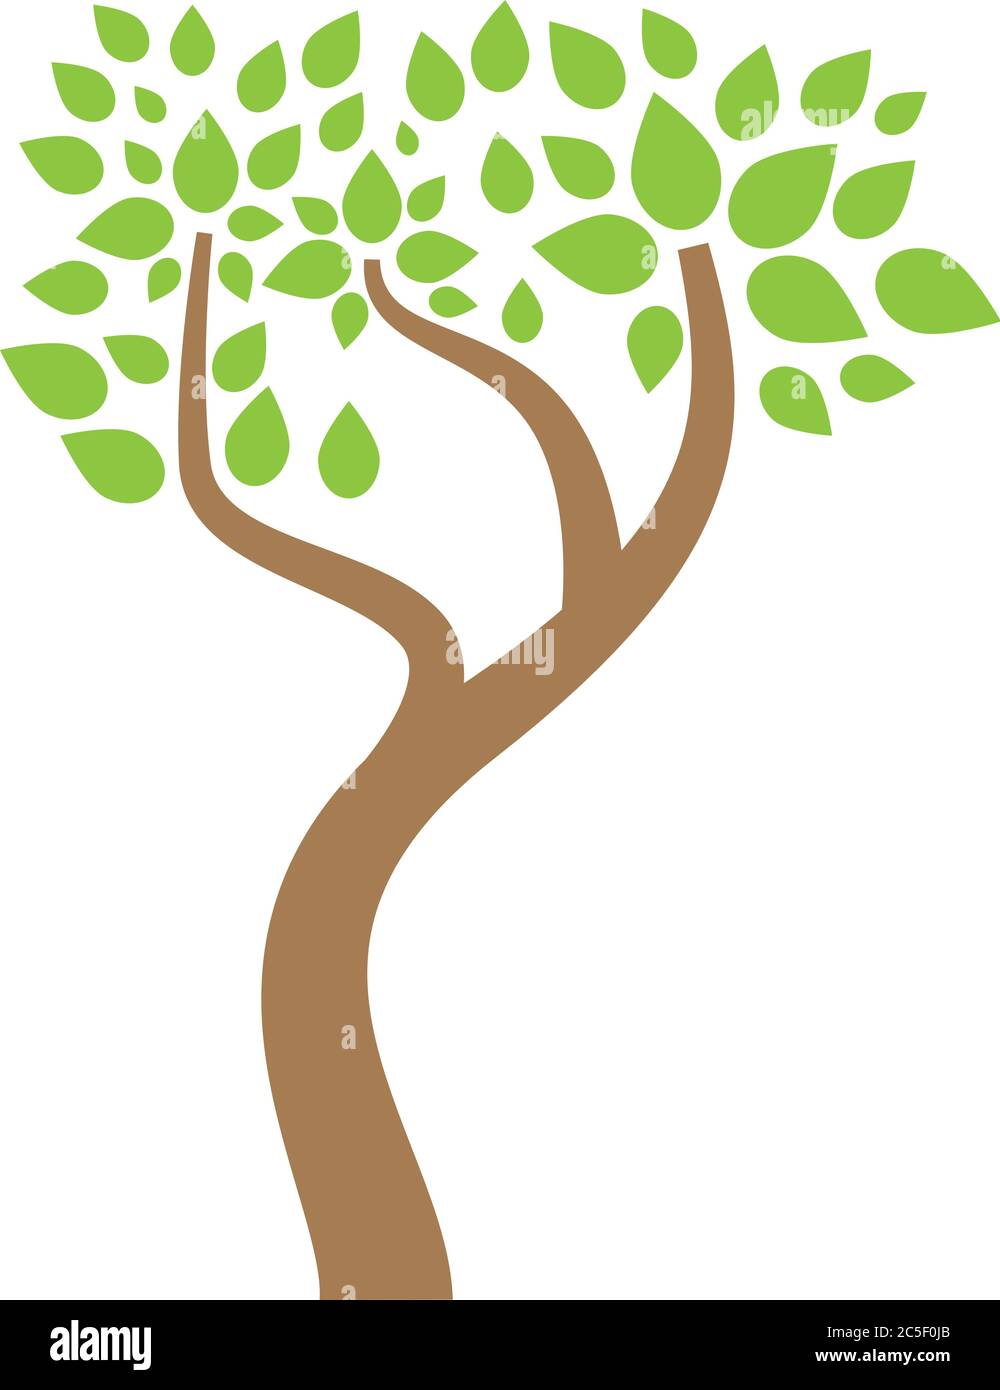 Baum Symbol Flat Design Vektor Natur Illustration Zweige mit grünen Blättern auf Weißem Hintergrund Stock Vektor